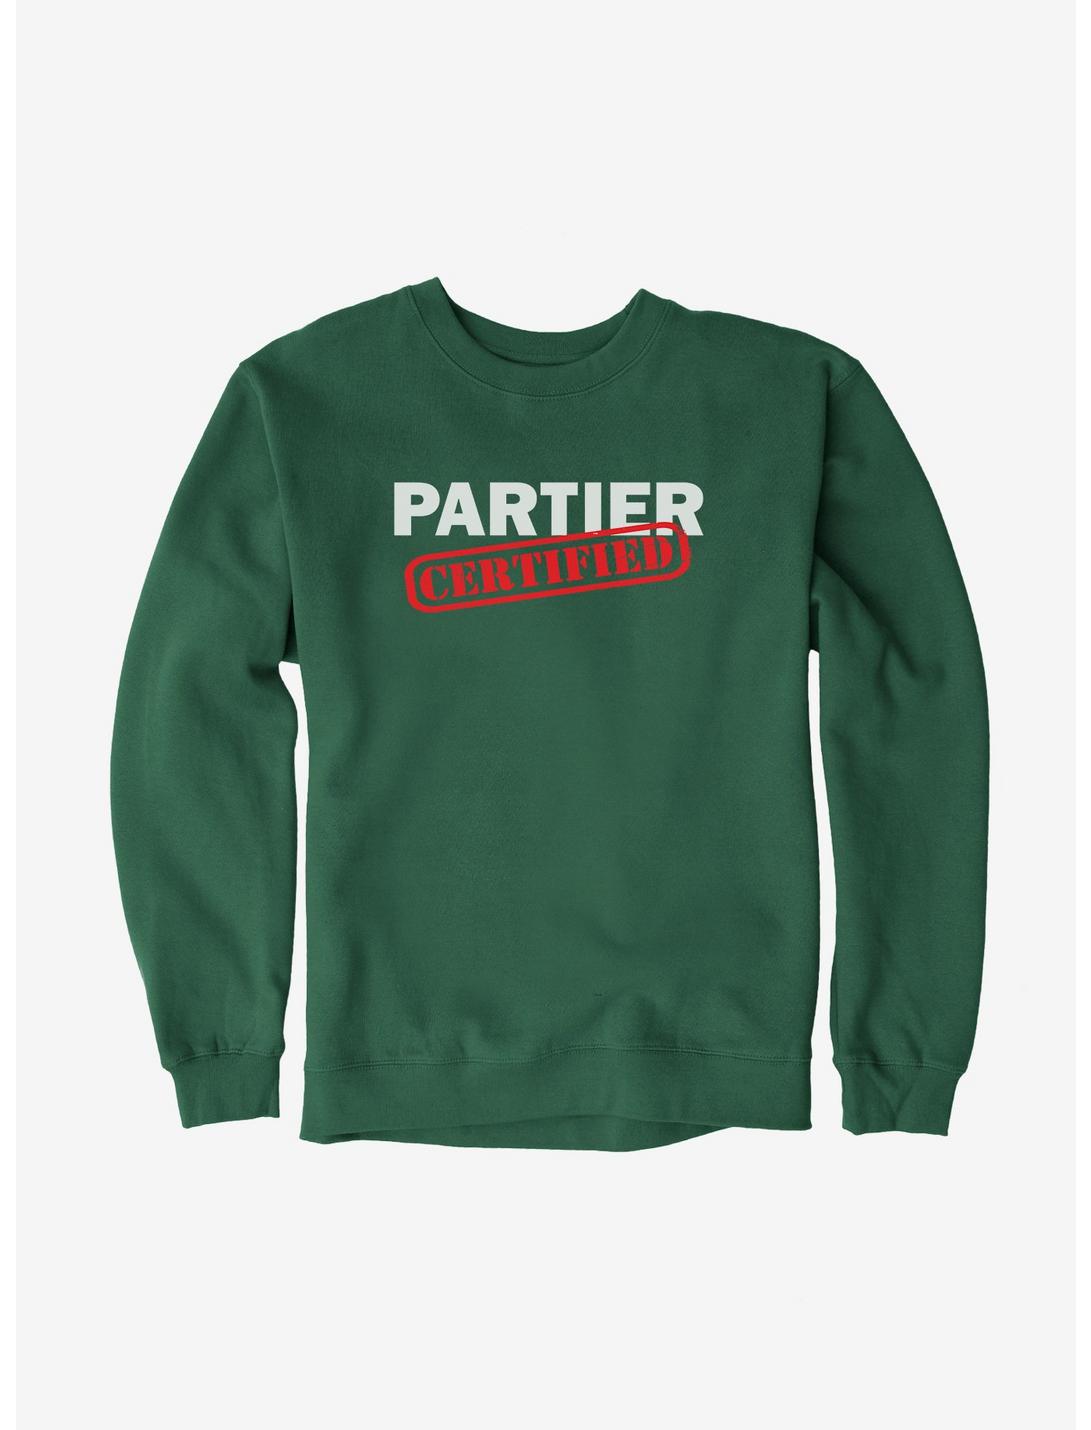 ICreate Certified Partier Sweatshirt, , hi-res